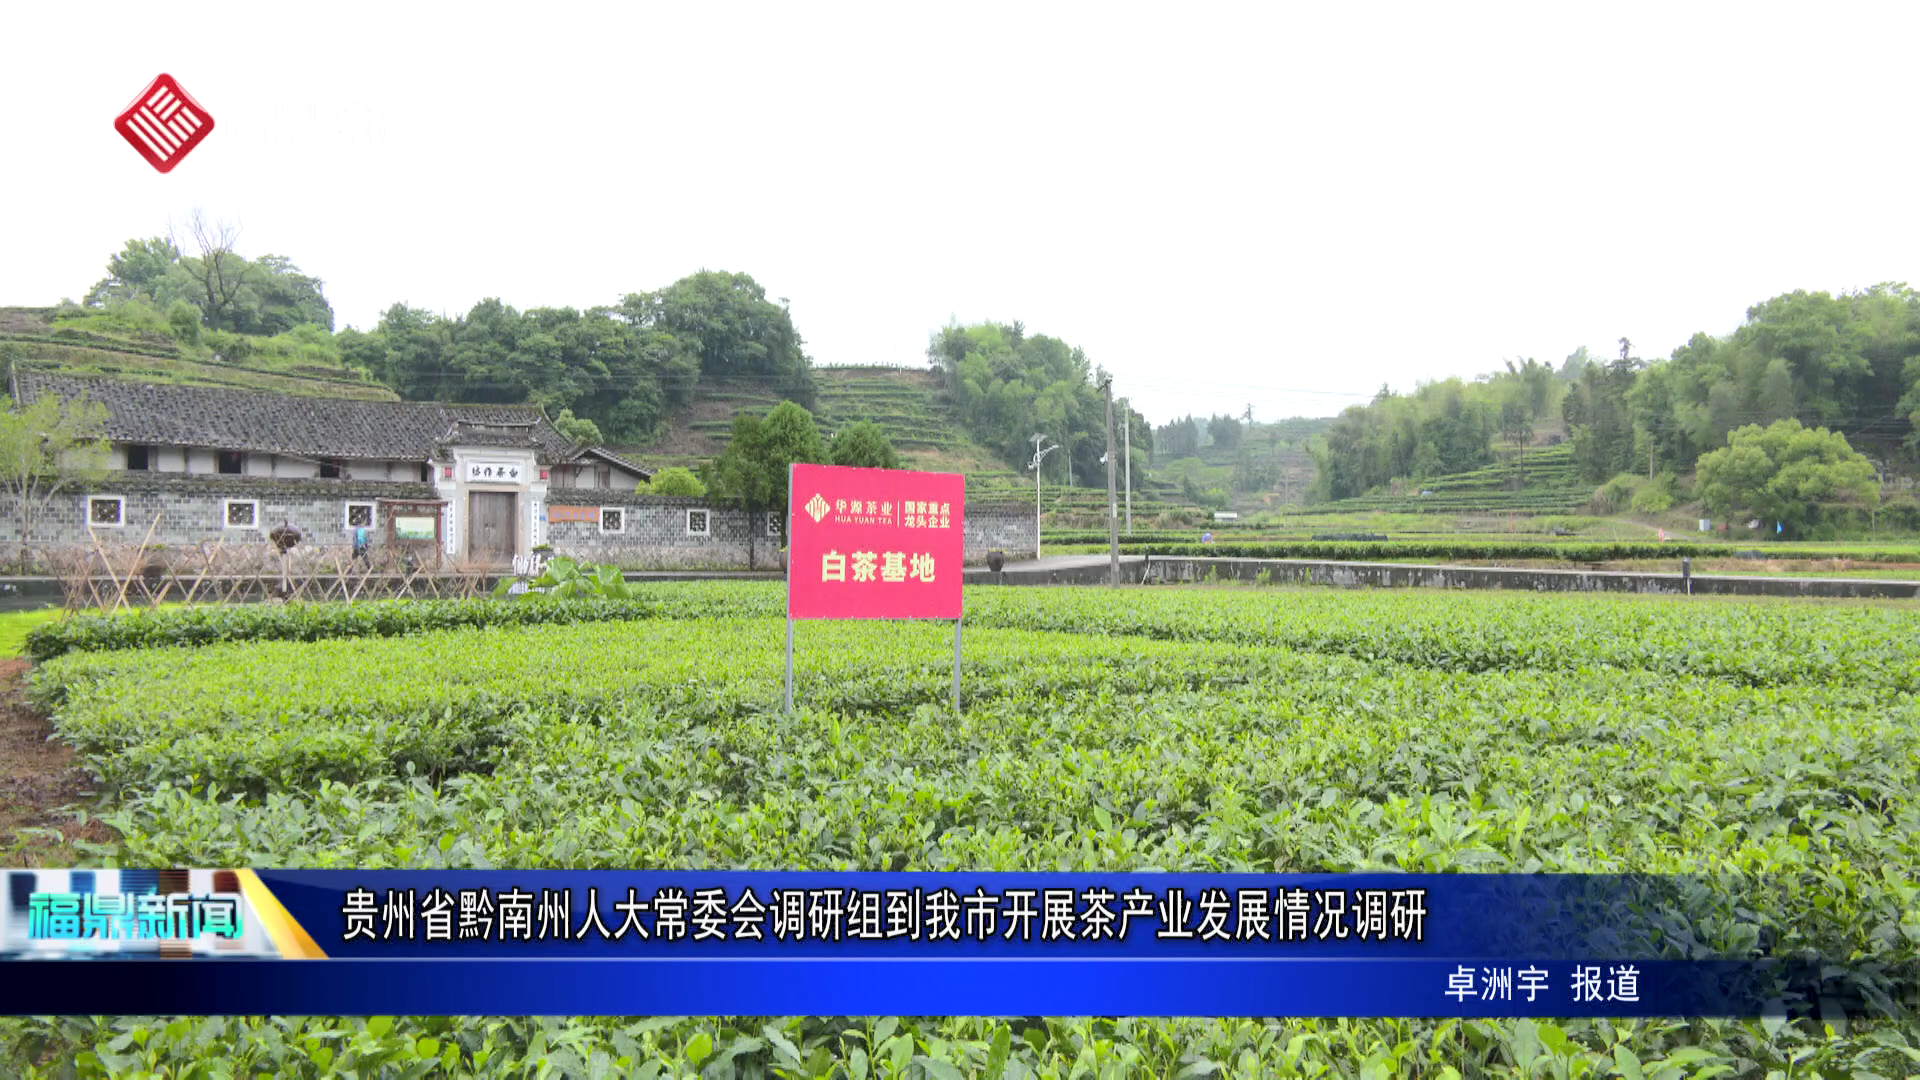 贵州省黔南州人大常委会调研组到我市开展茶产业发展情况调研